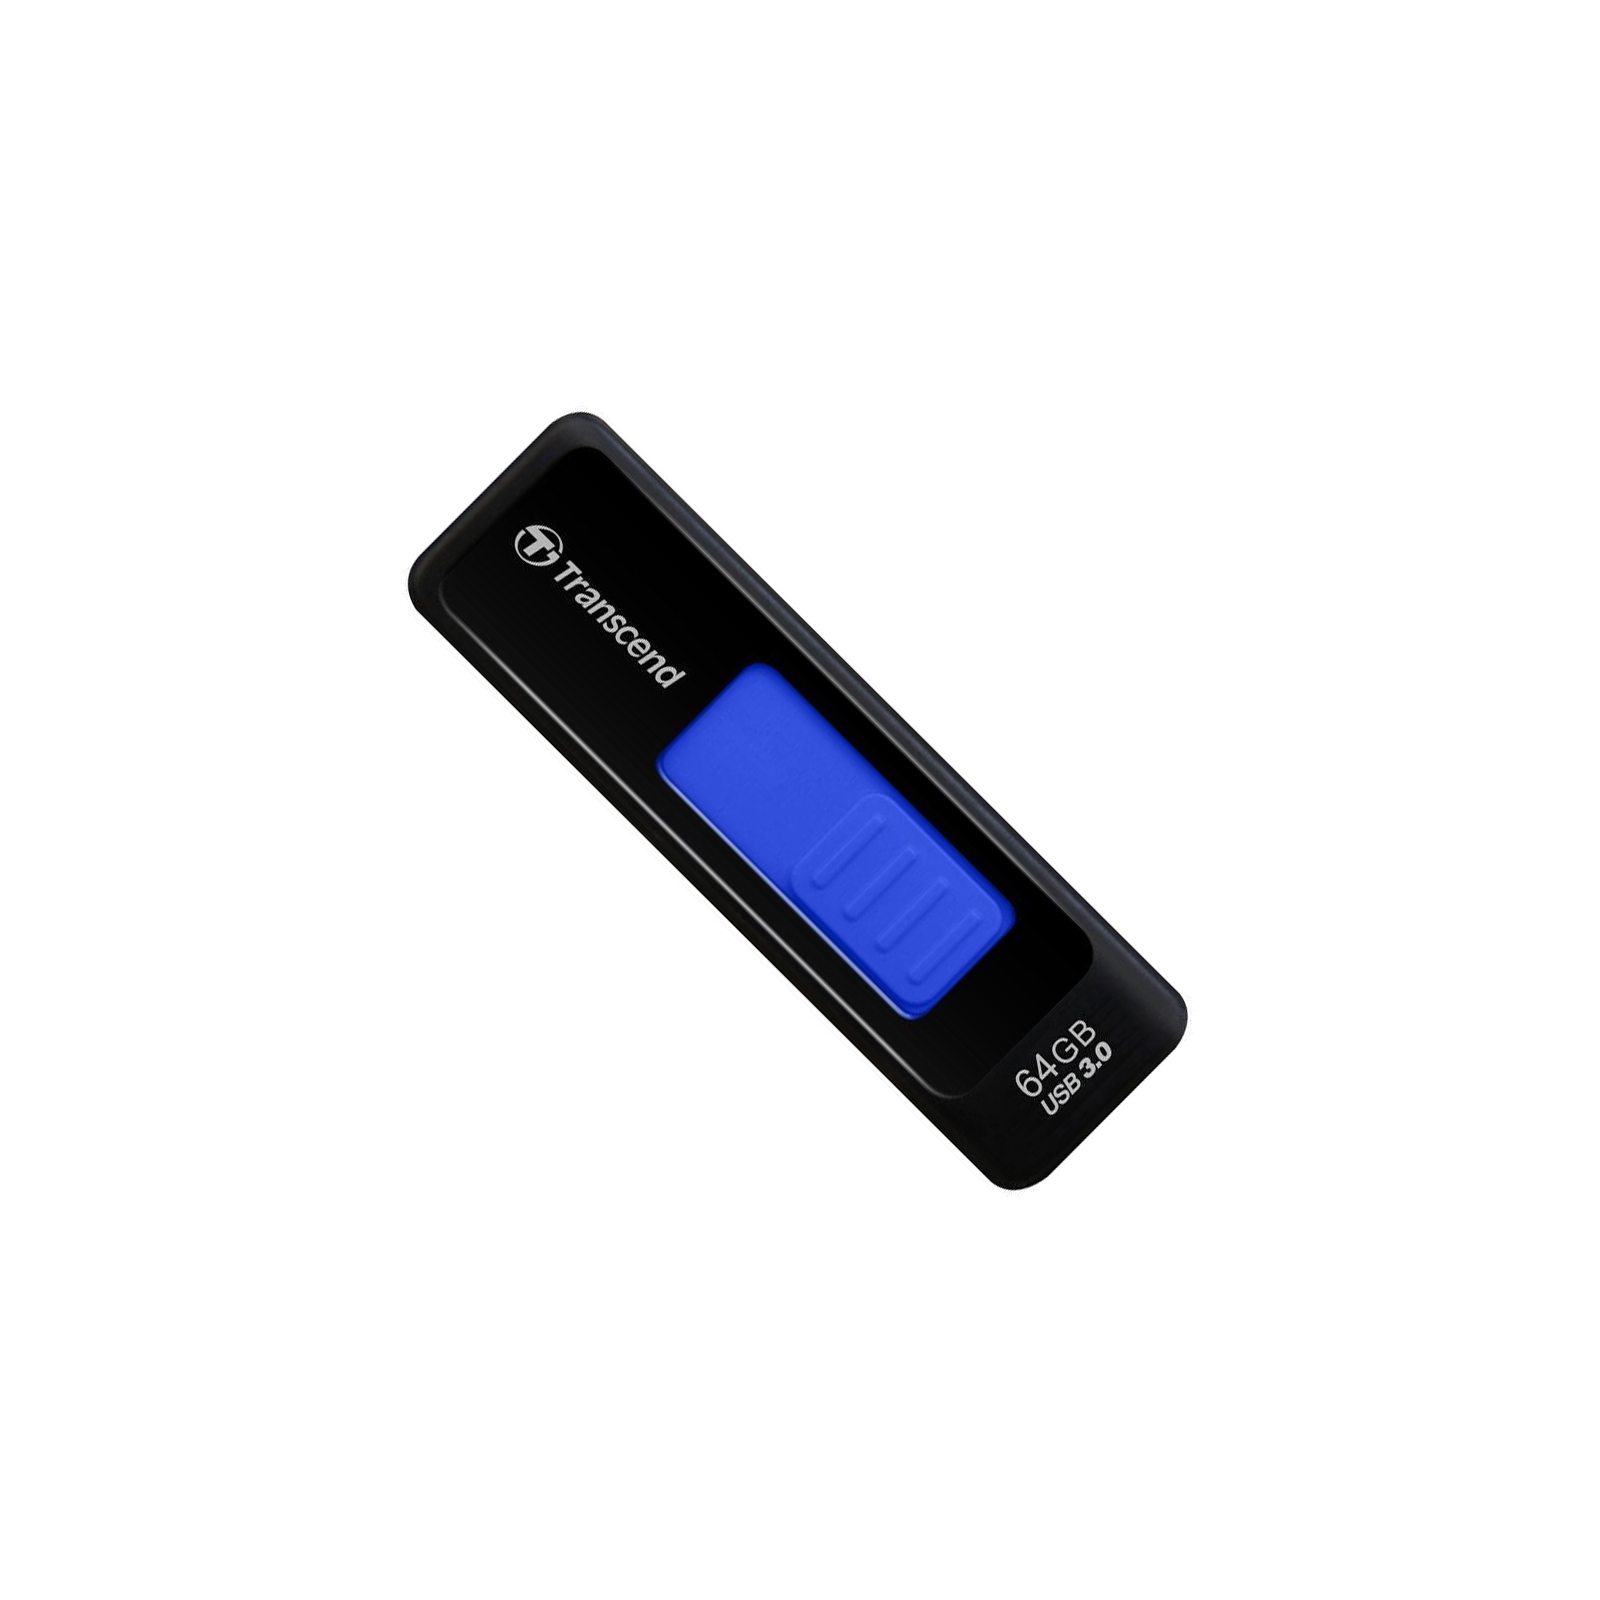 USB флеш накопитель Transcend 16Gb JetFlash 760 (TS16GJF760)